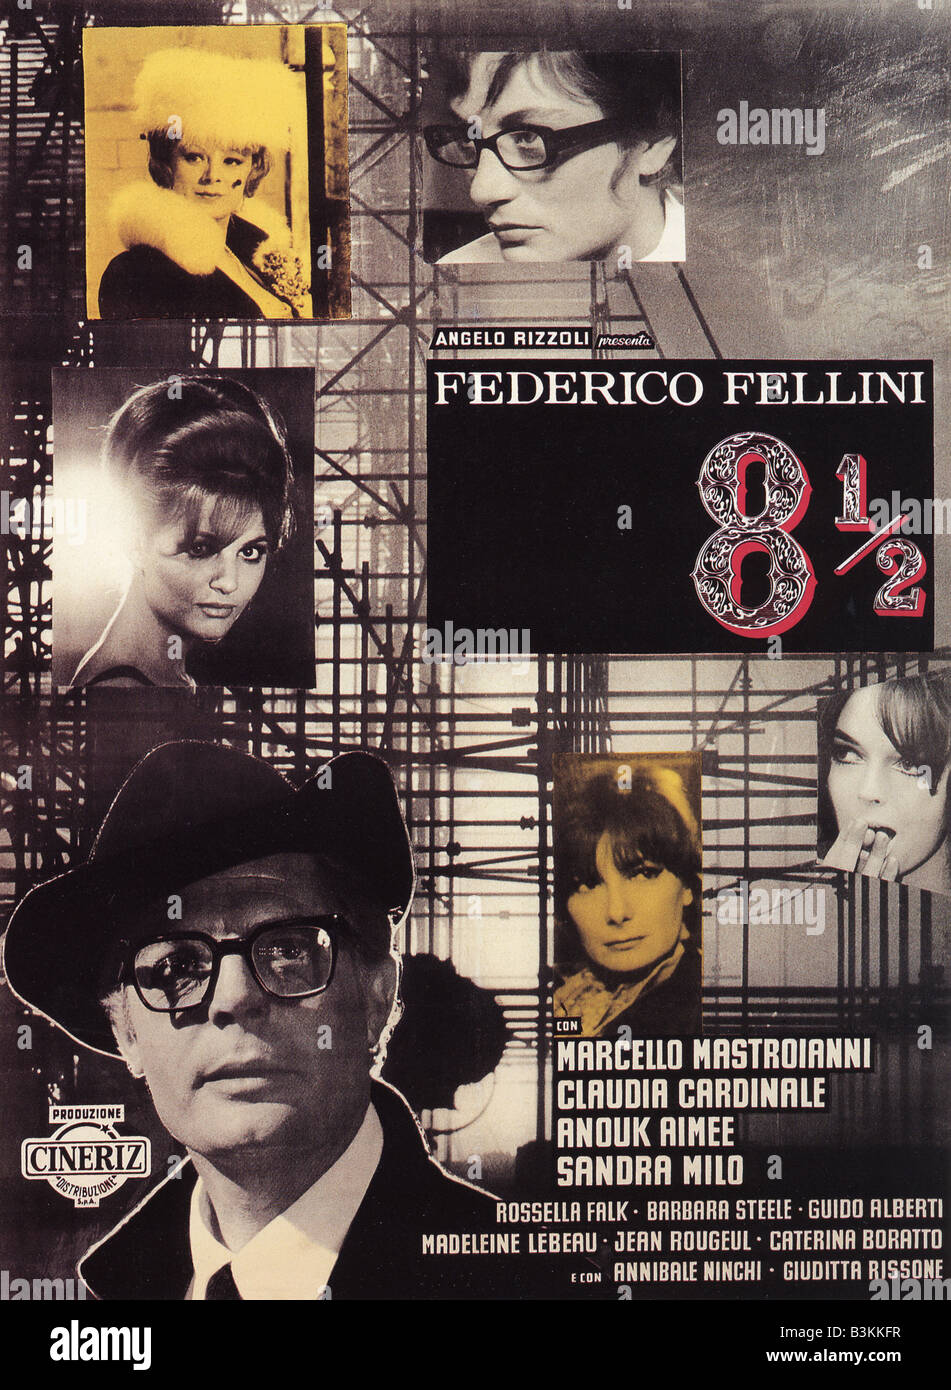 8 1/2 aka Otto e mezzo per Poster 1963 Cineriz film diretto da Federico Fellini Foto Stock